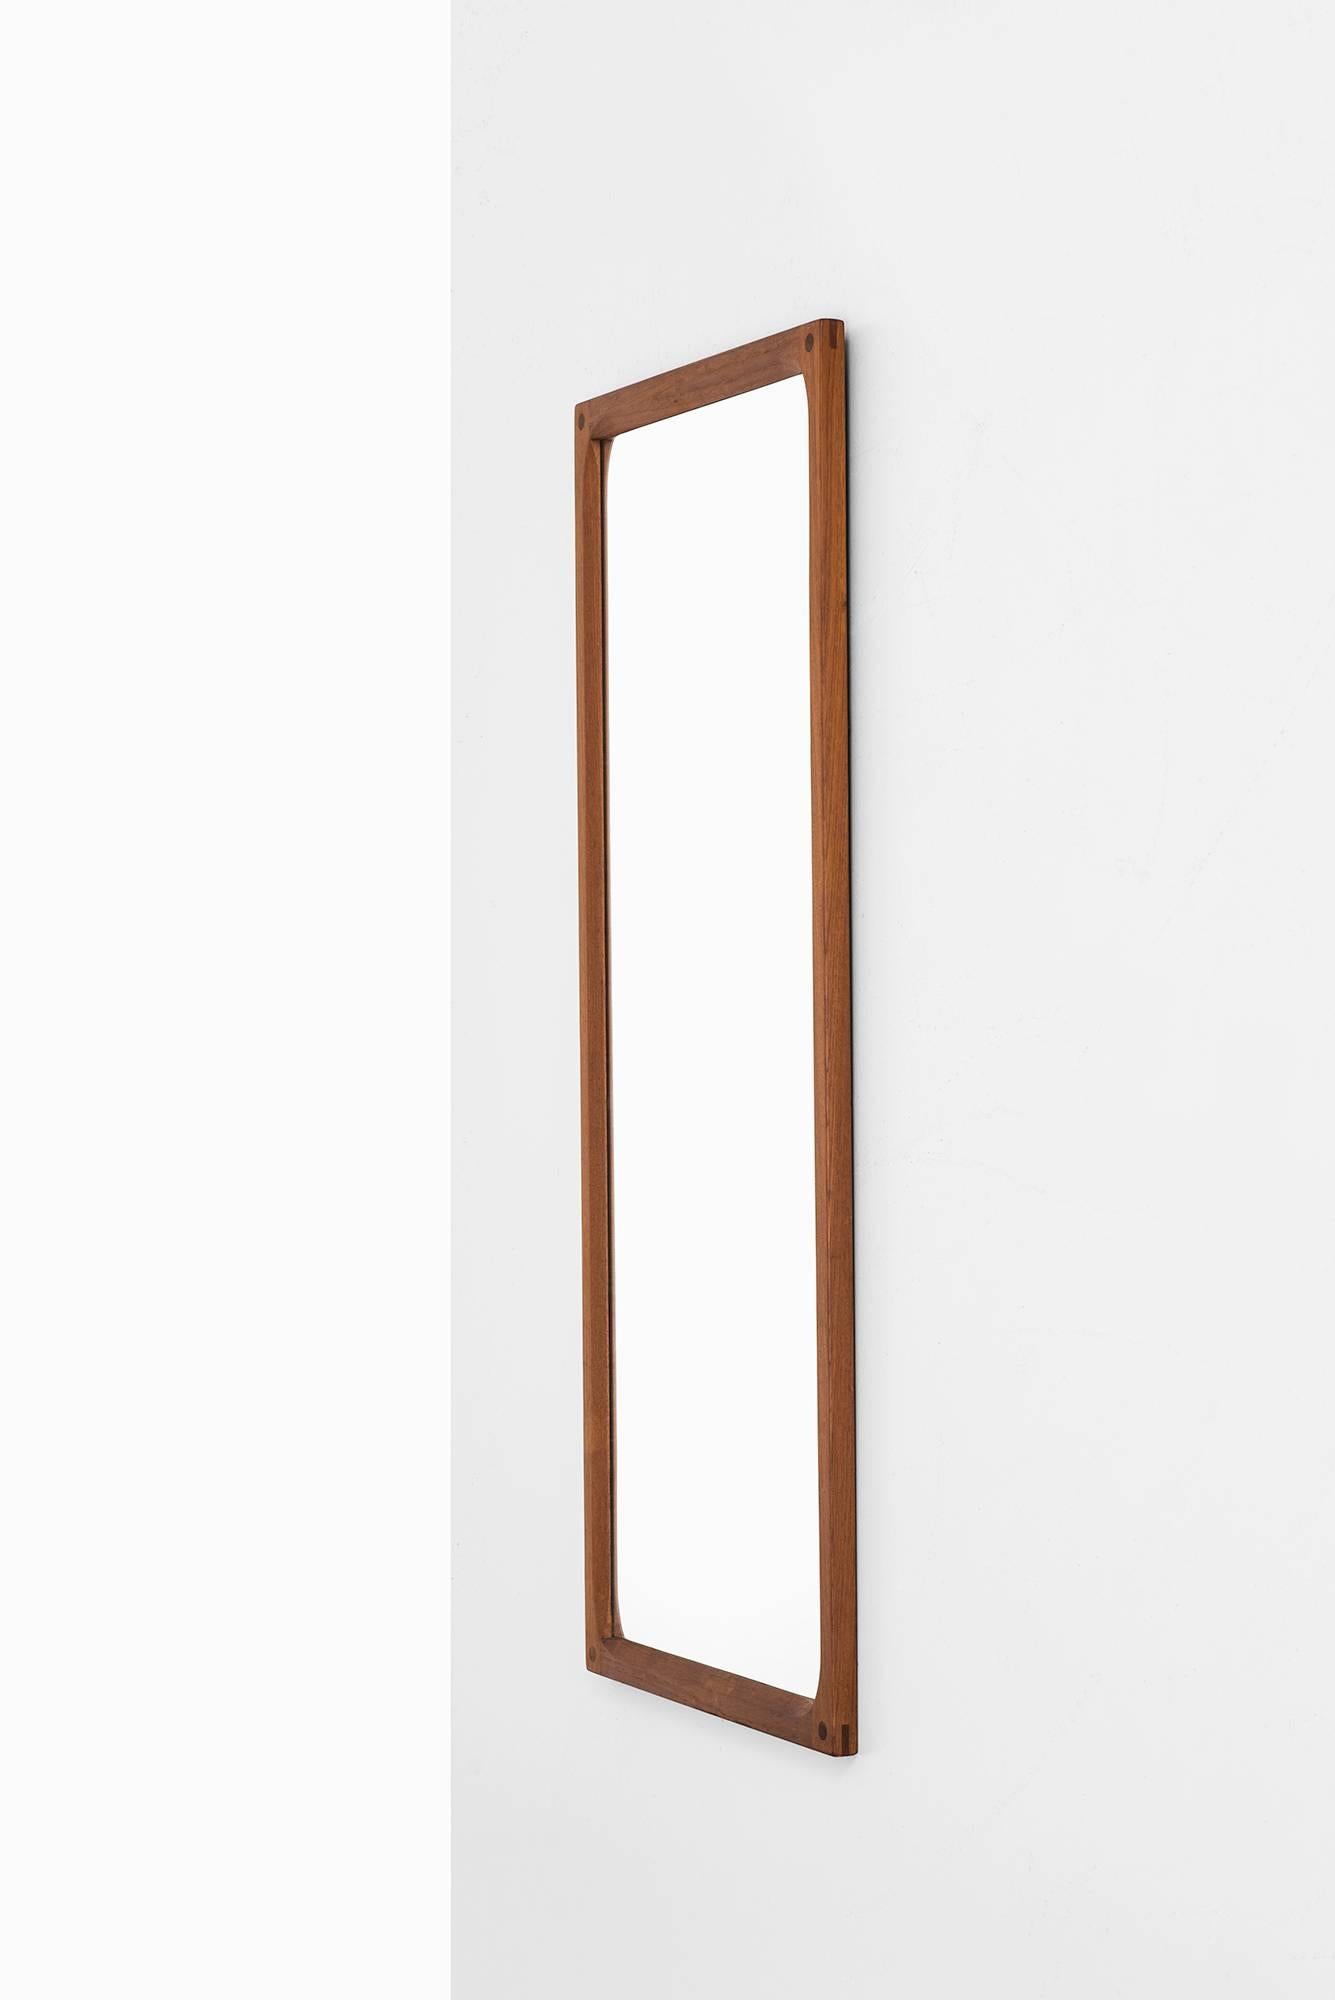 Miroir en teck conçu par Aksel Kjersgaard. Produit par Odder au Danemark.